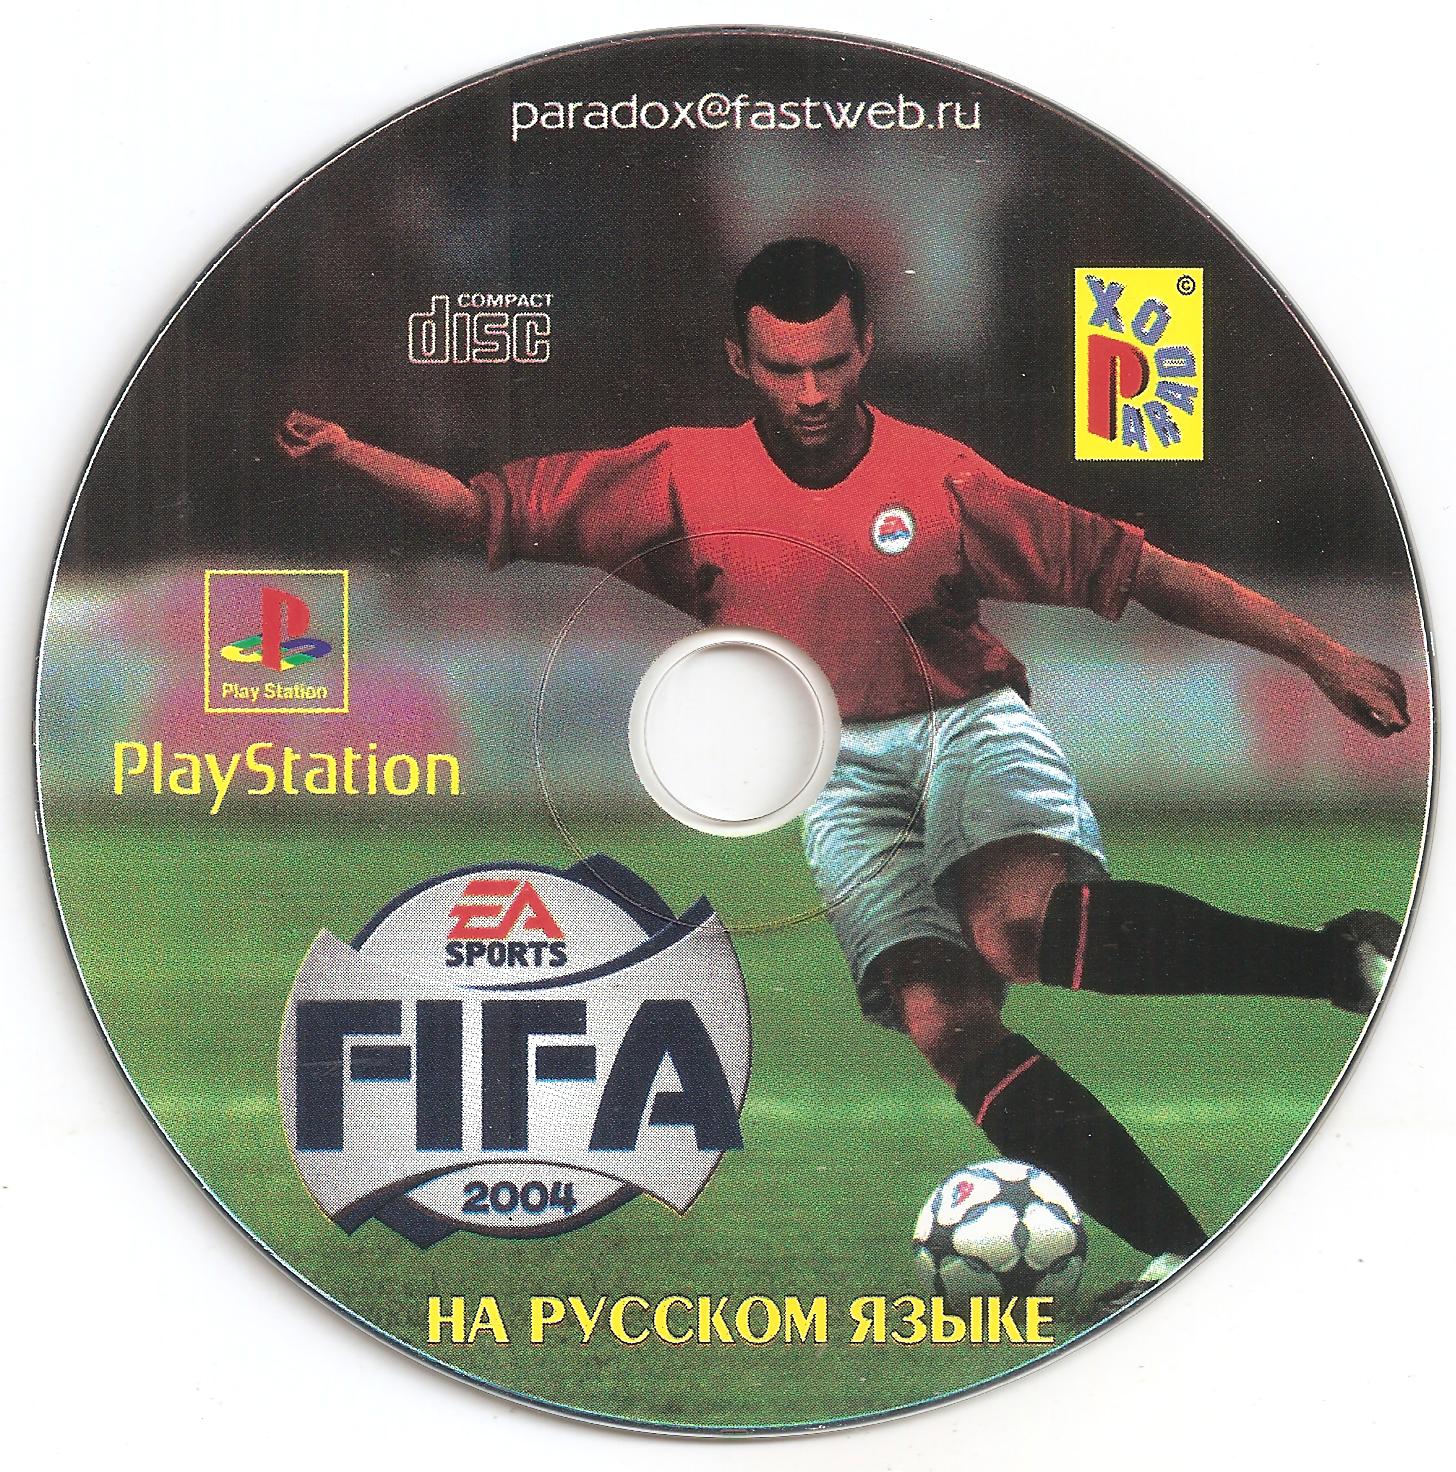 Fifa ps1. FIFA 2004 ps1. FIFA 2004 ps1 обложка. FIFA 2000 ps1 обложка. FIFA Soccer 2004 ps1.